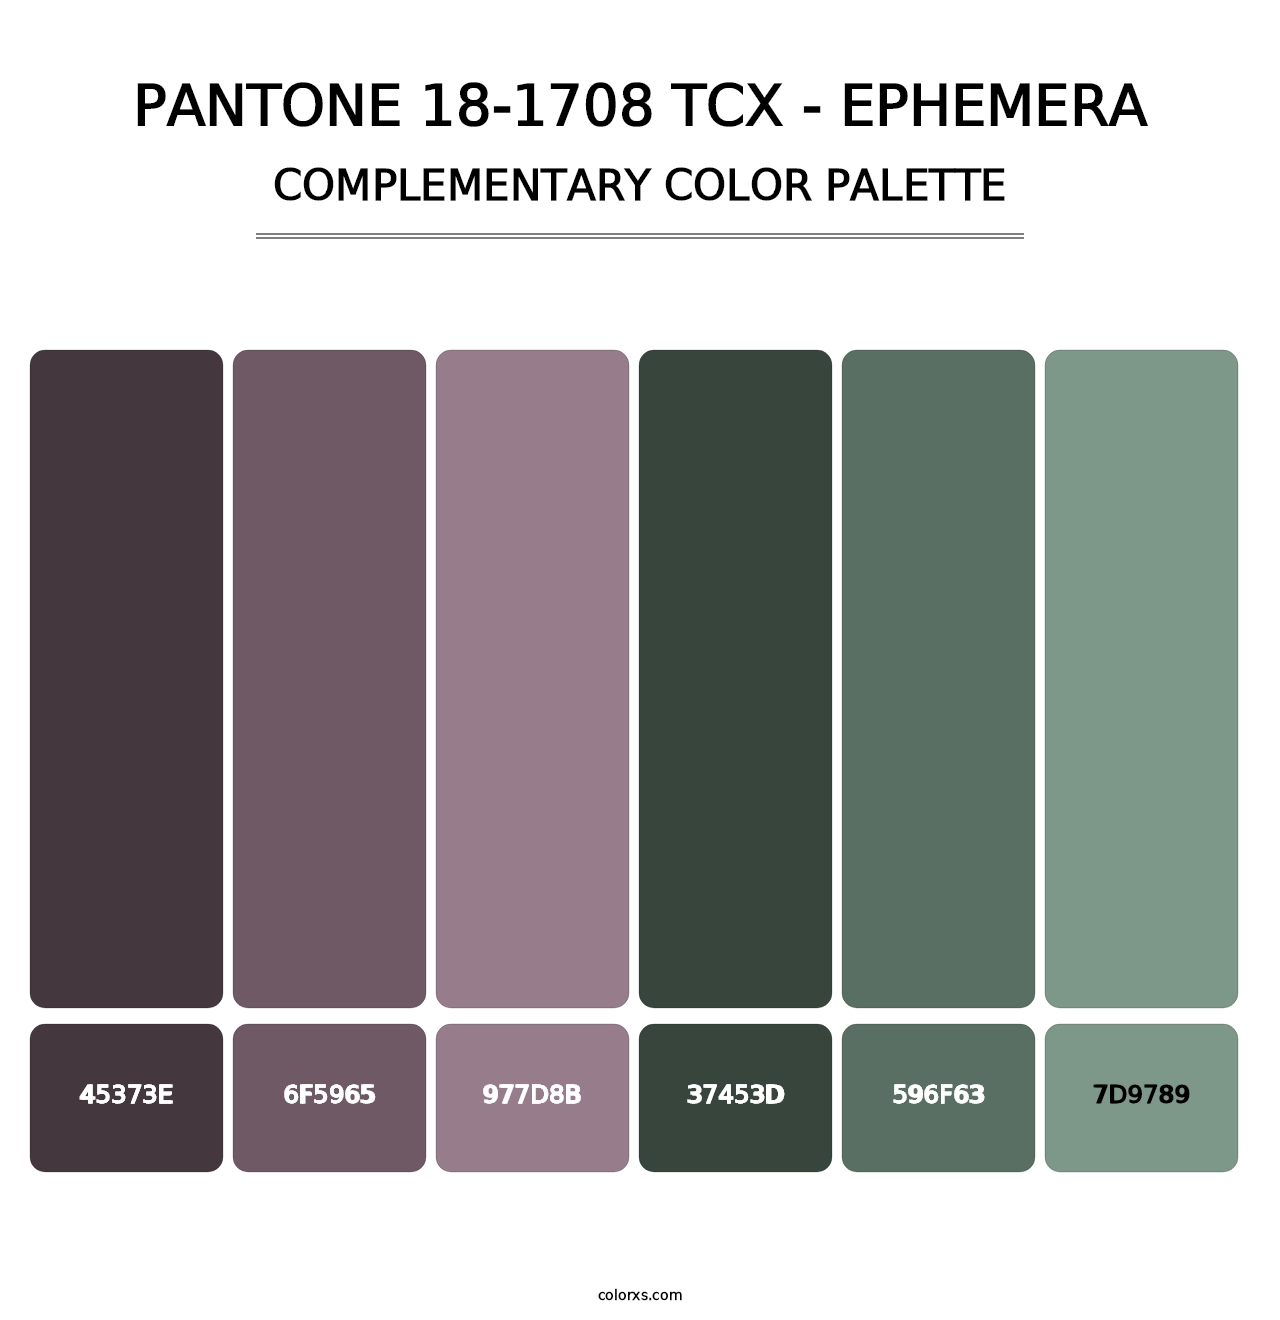 PANTONE 18-1708 TCX - Ephemera - Complementary Color Palette